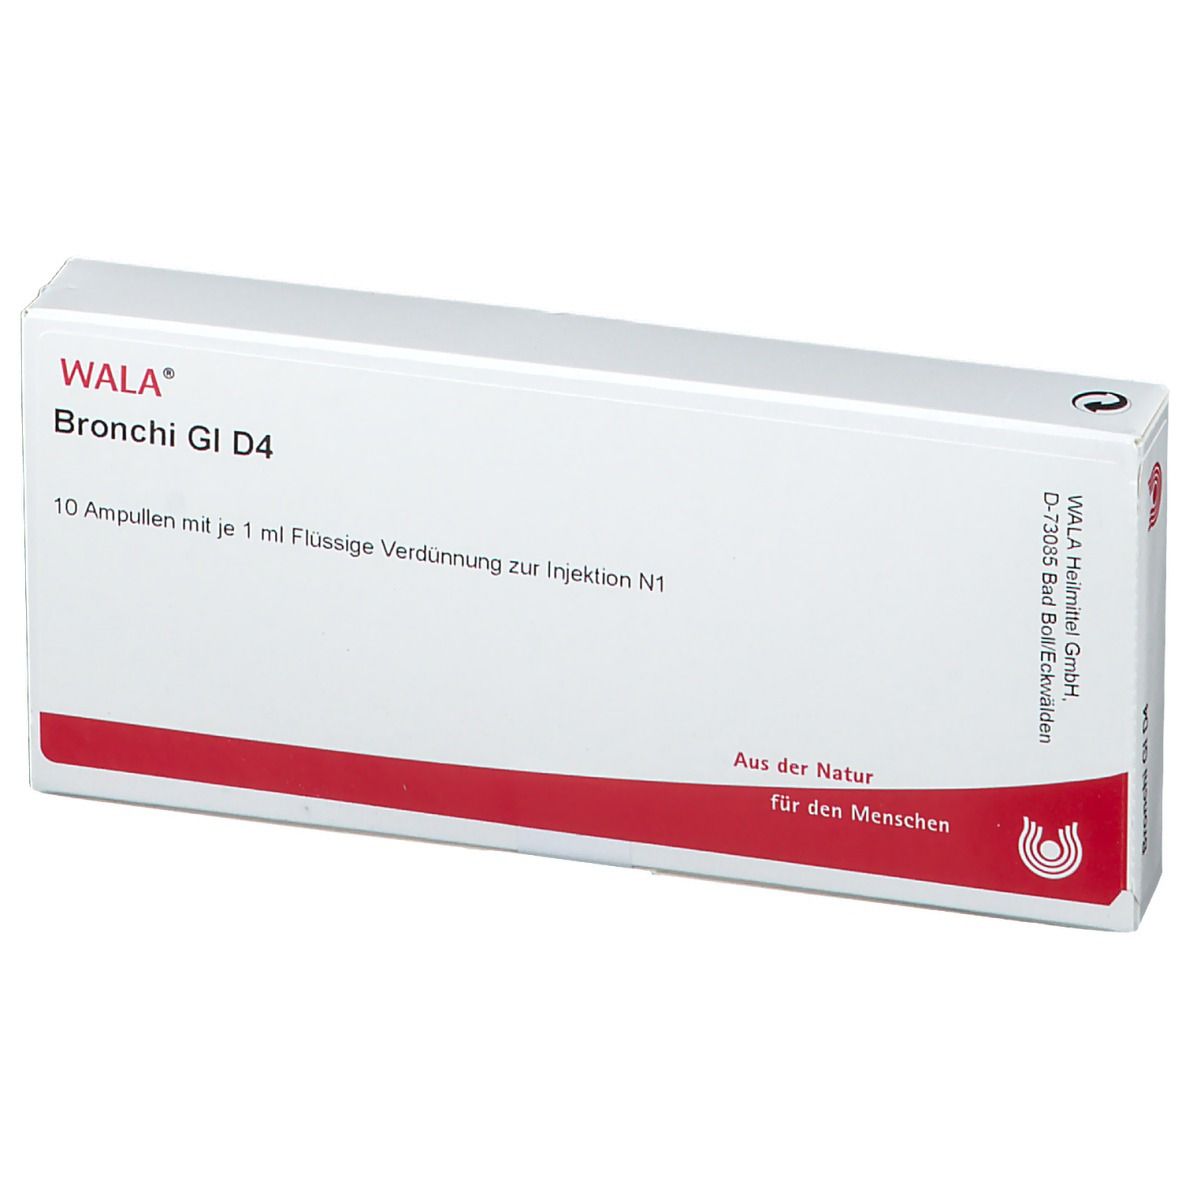 WALA® Bronchi Gl D 4